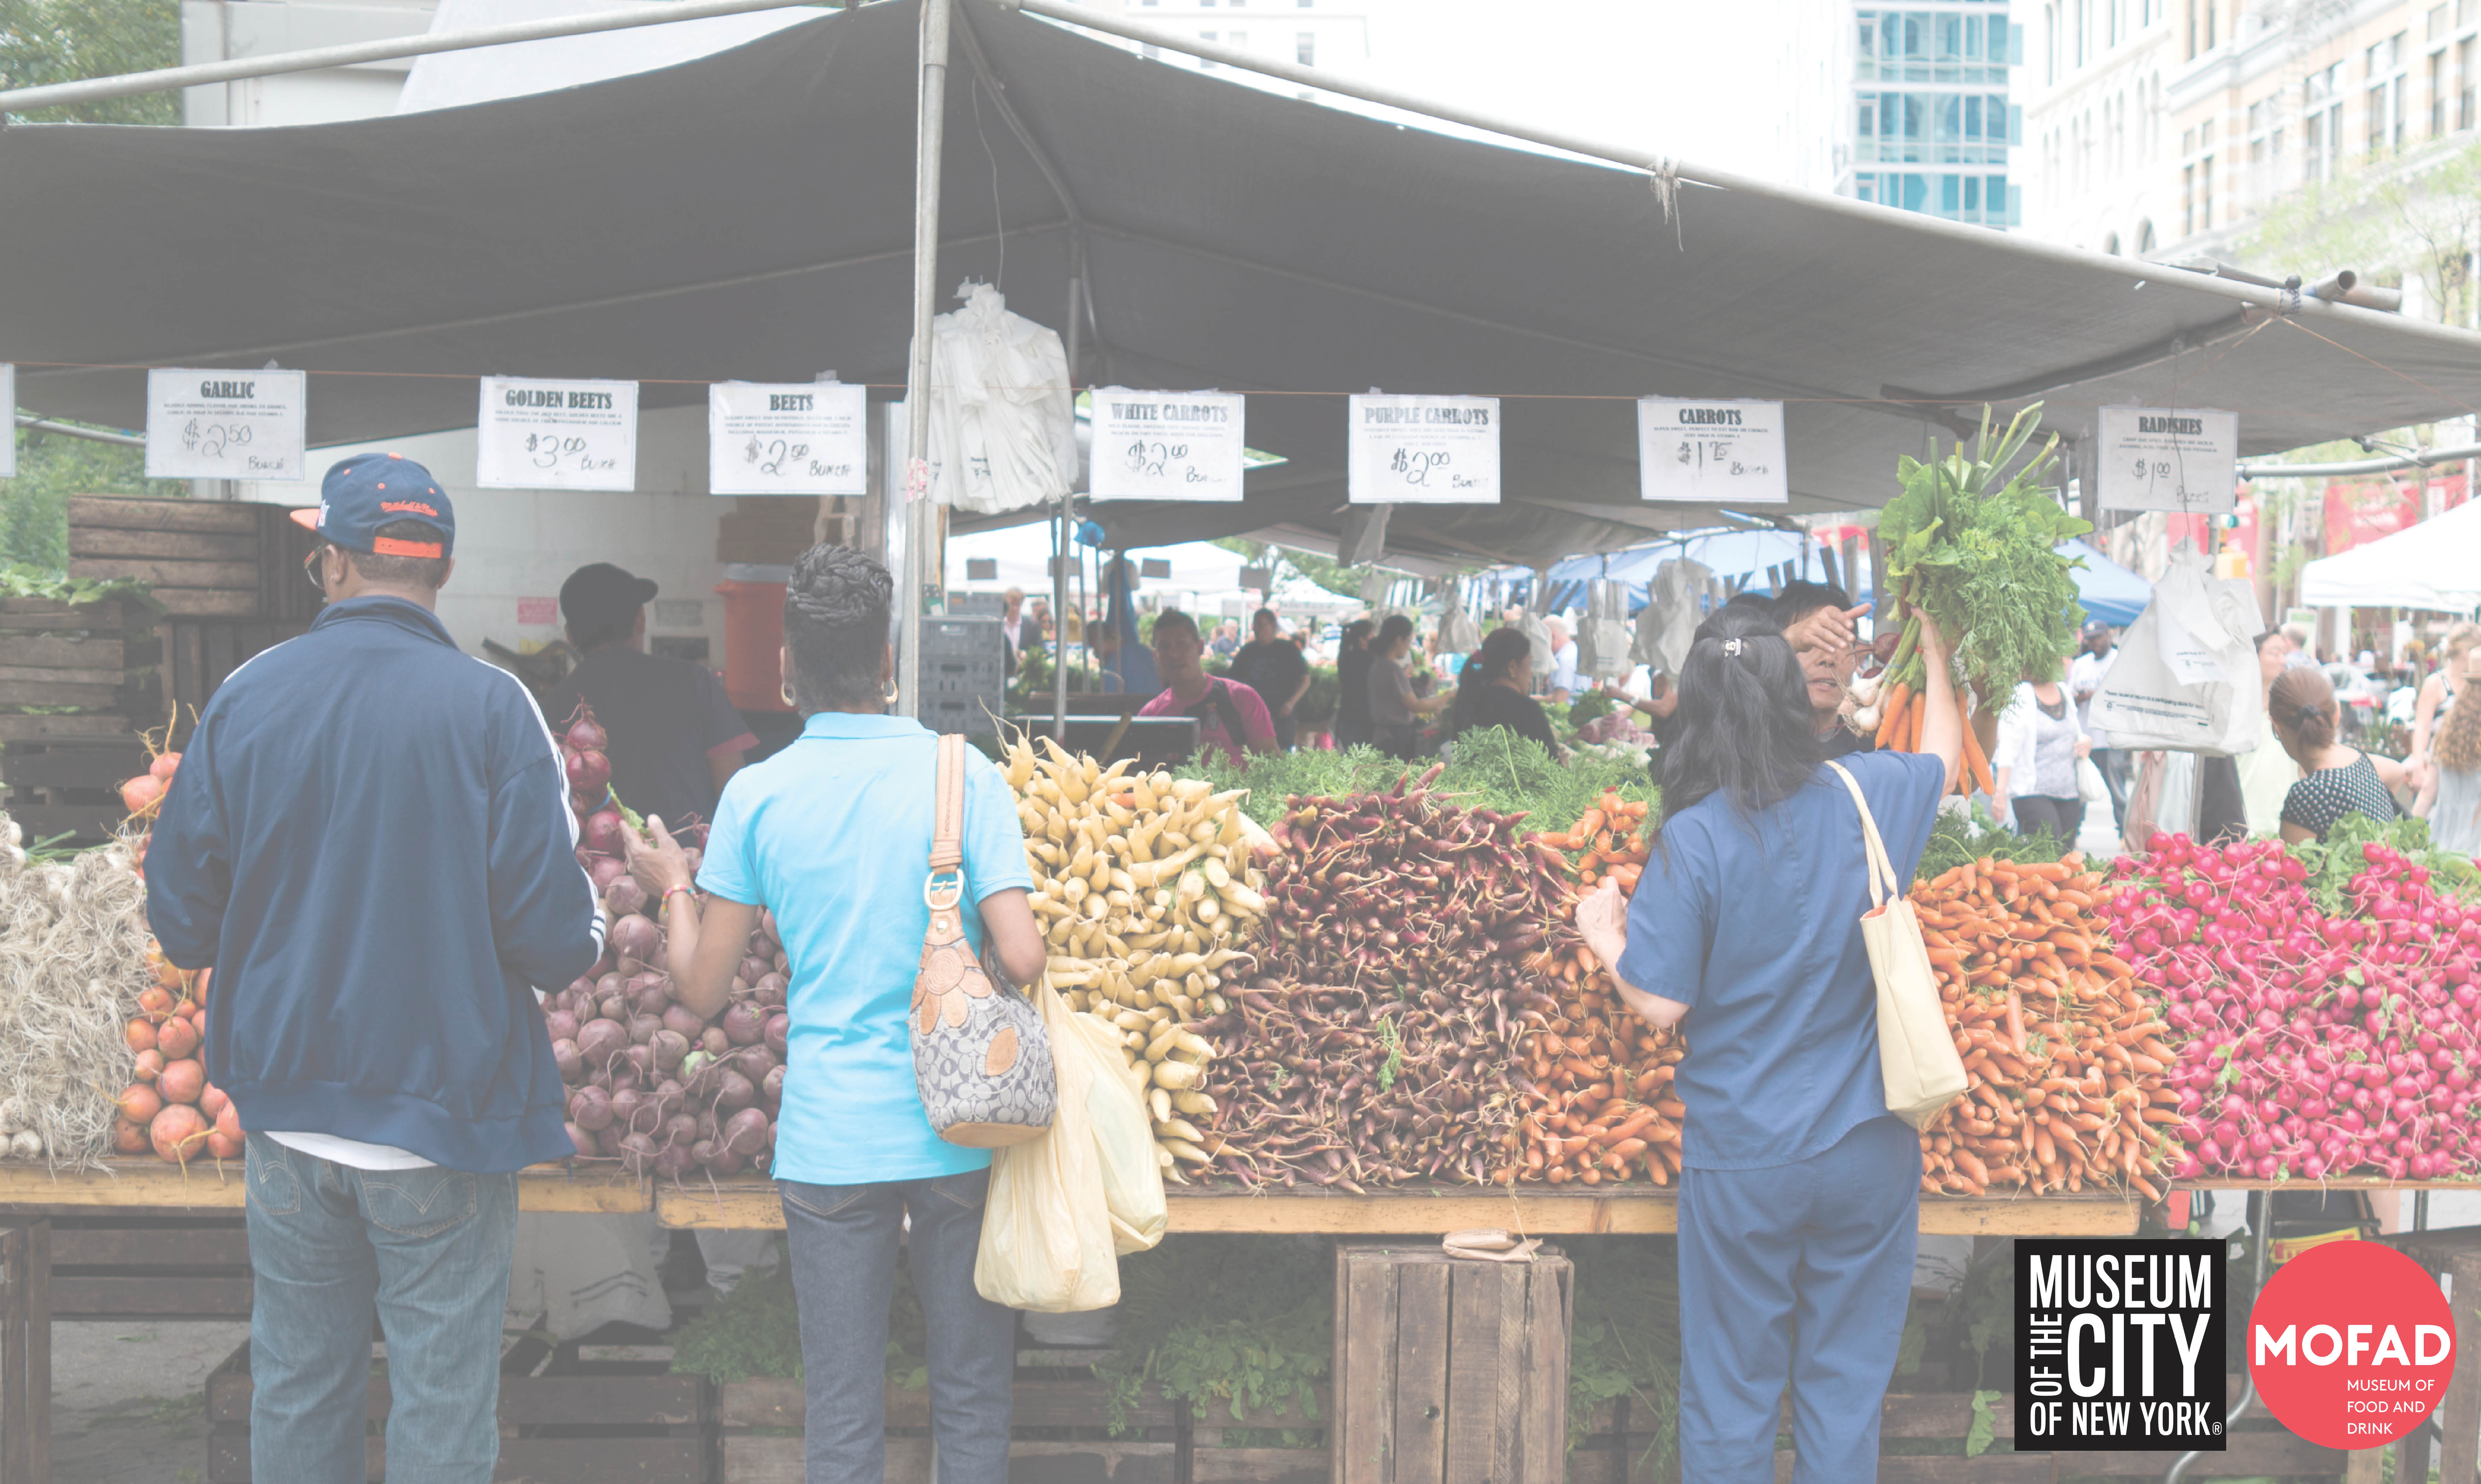 De espaldas a la cámara, tres personas están de pie frente a un puesto de mercado de agricultores en Union Square Greenmarket. Hay pilas de ajo, remolacha y zanahorias de izquierda a derecha.